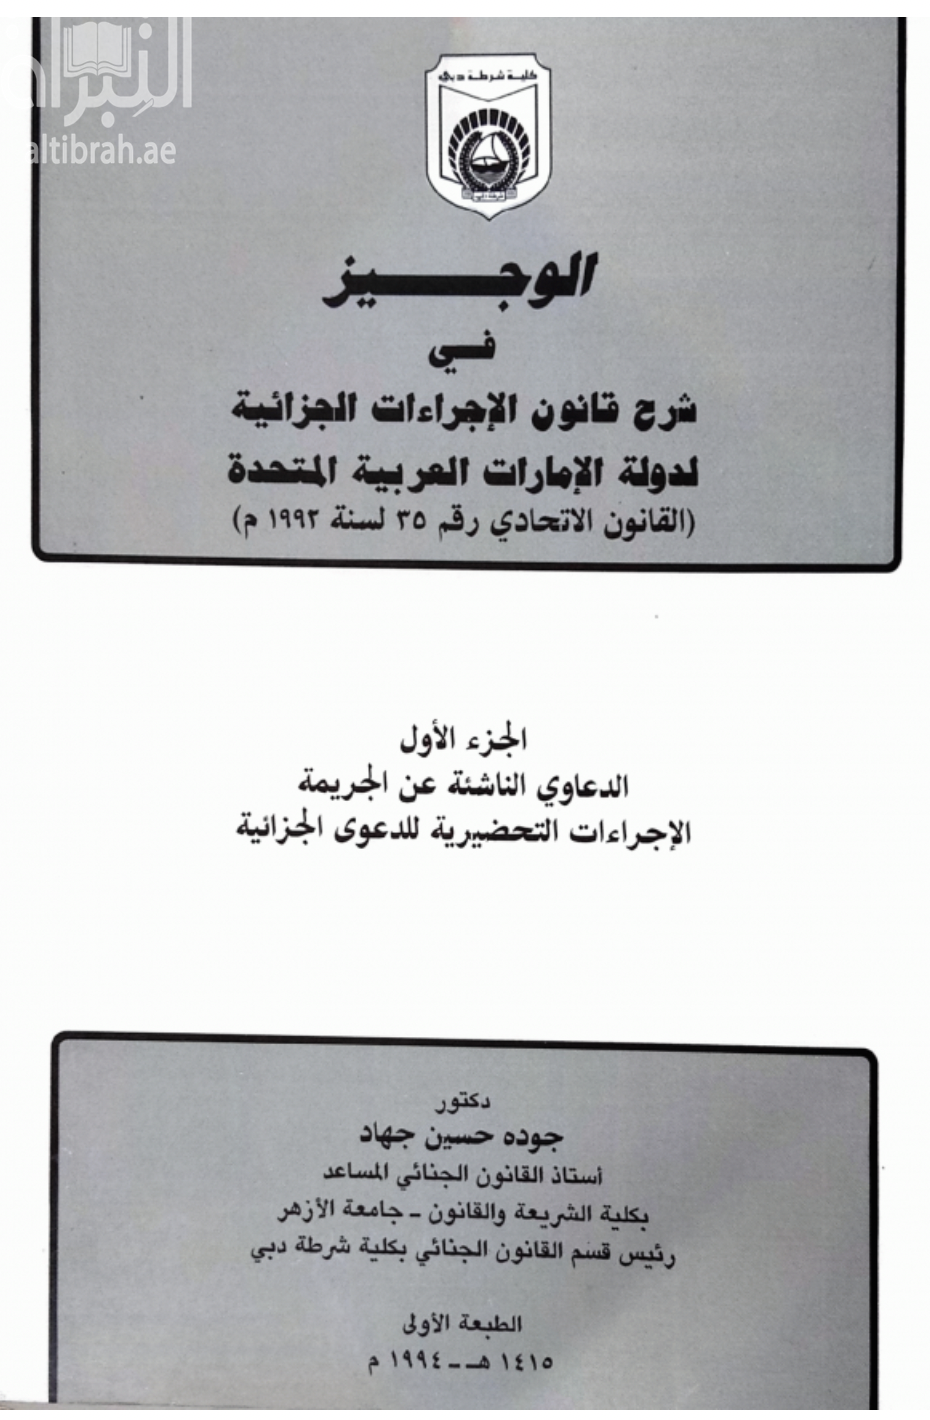 كتاب الوجيز في شرح قانون الاجراءات الجزائية لدولة الإمارات العربية المتحدة : القانون الاتحادي رقم 35 لسنة 1992 م